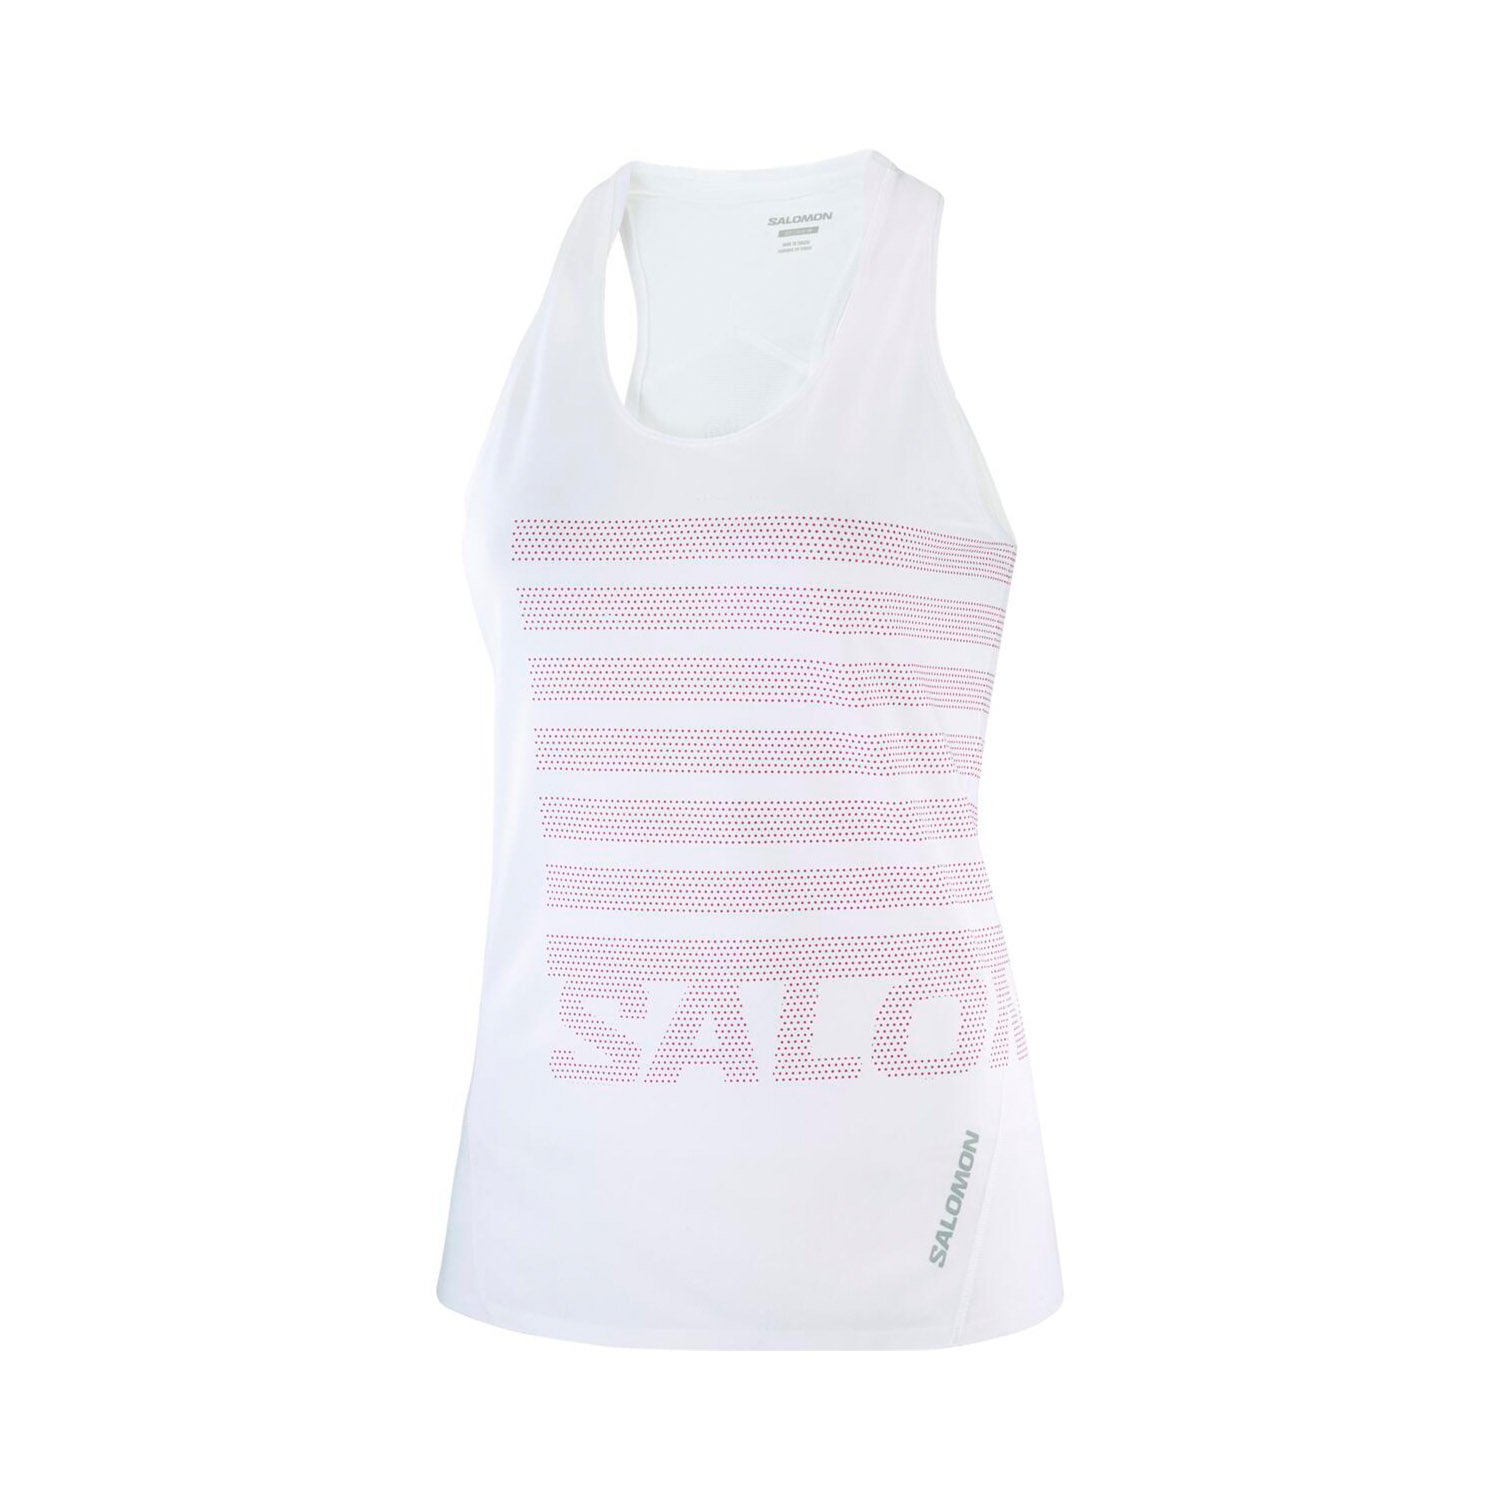 Salomon Sense Aero Singlet GFX Kadın Koşu Tişörtü - Beyaz - 1